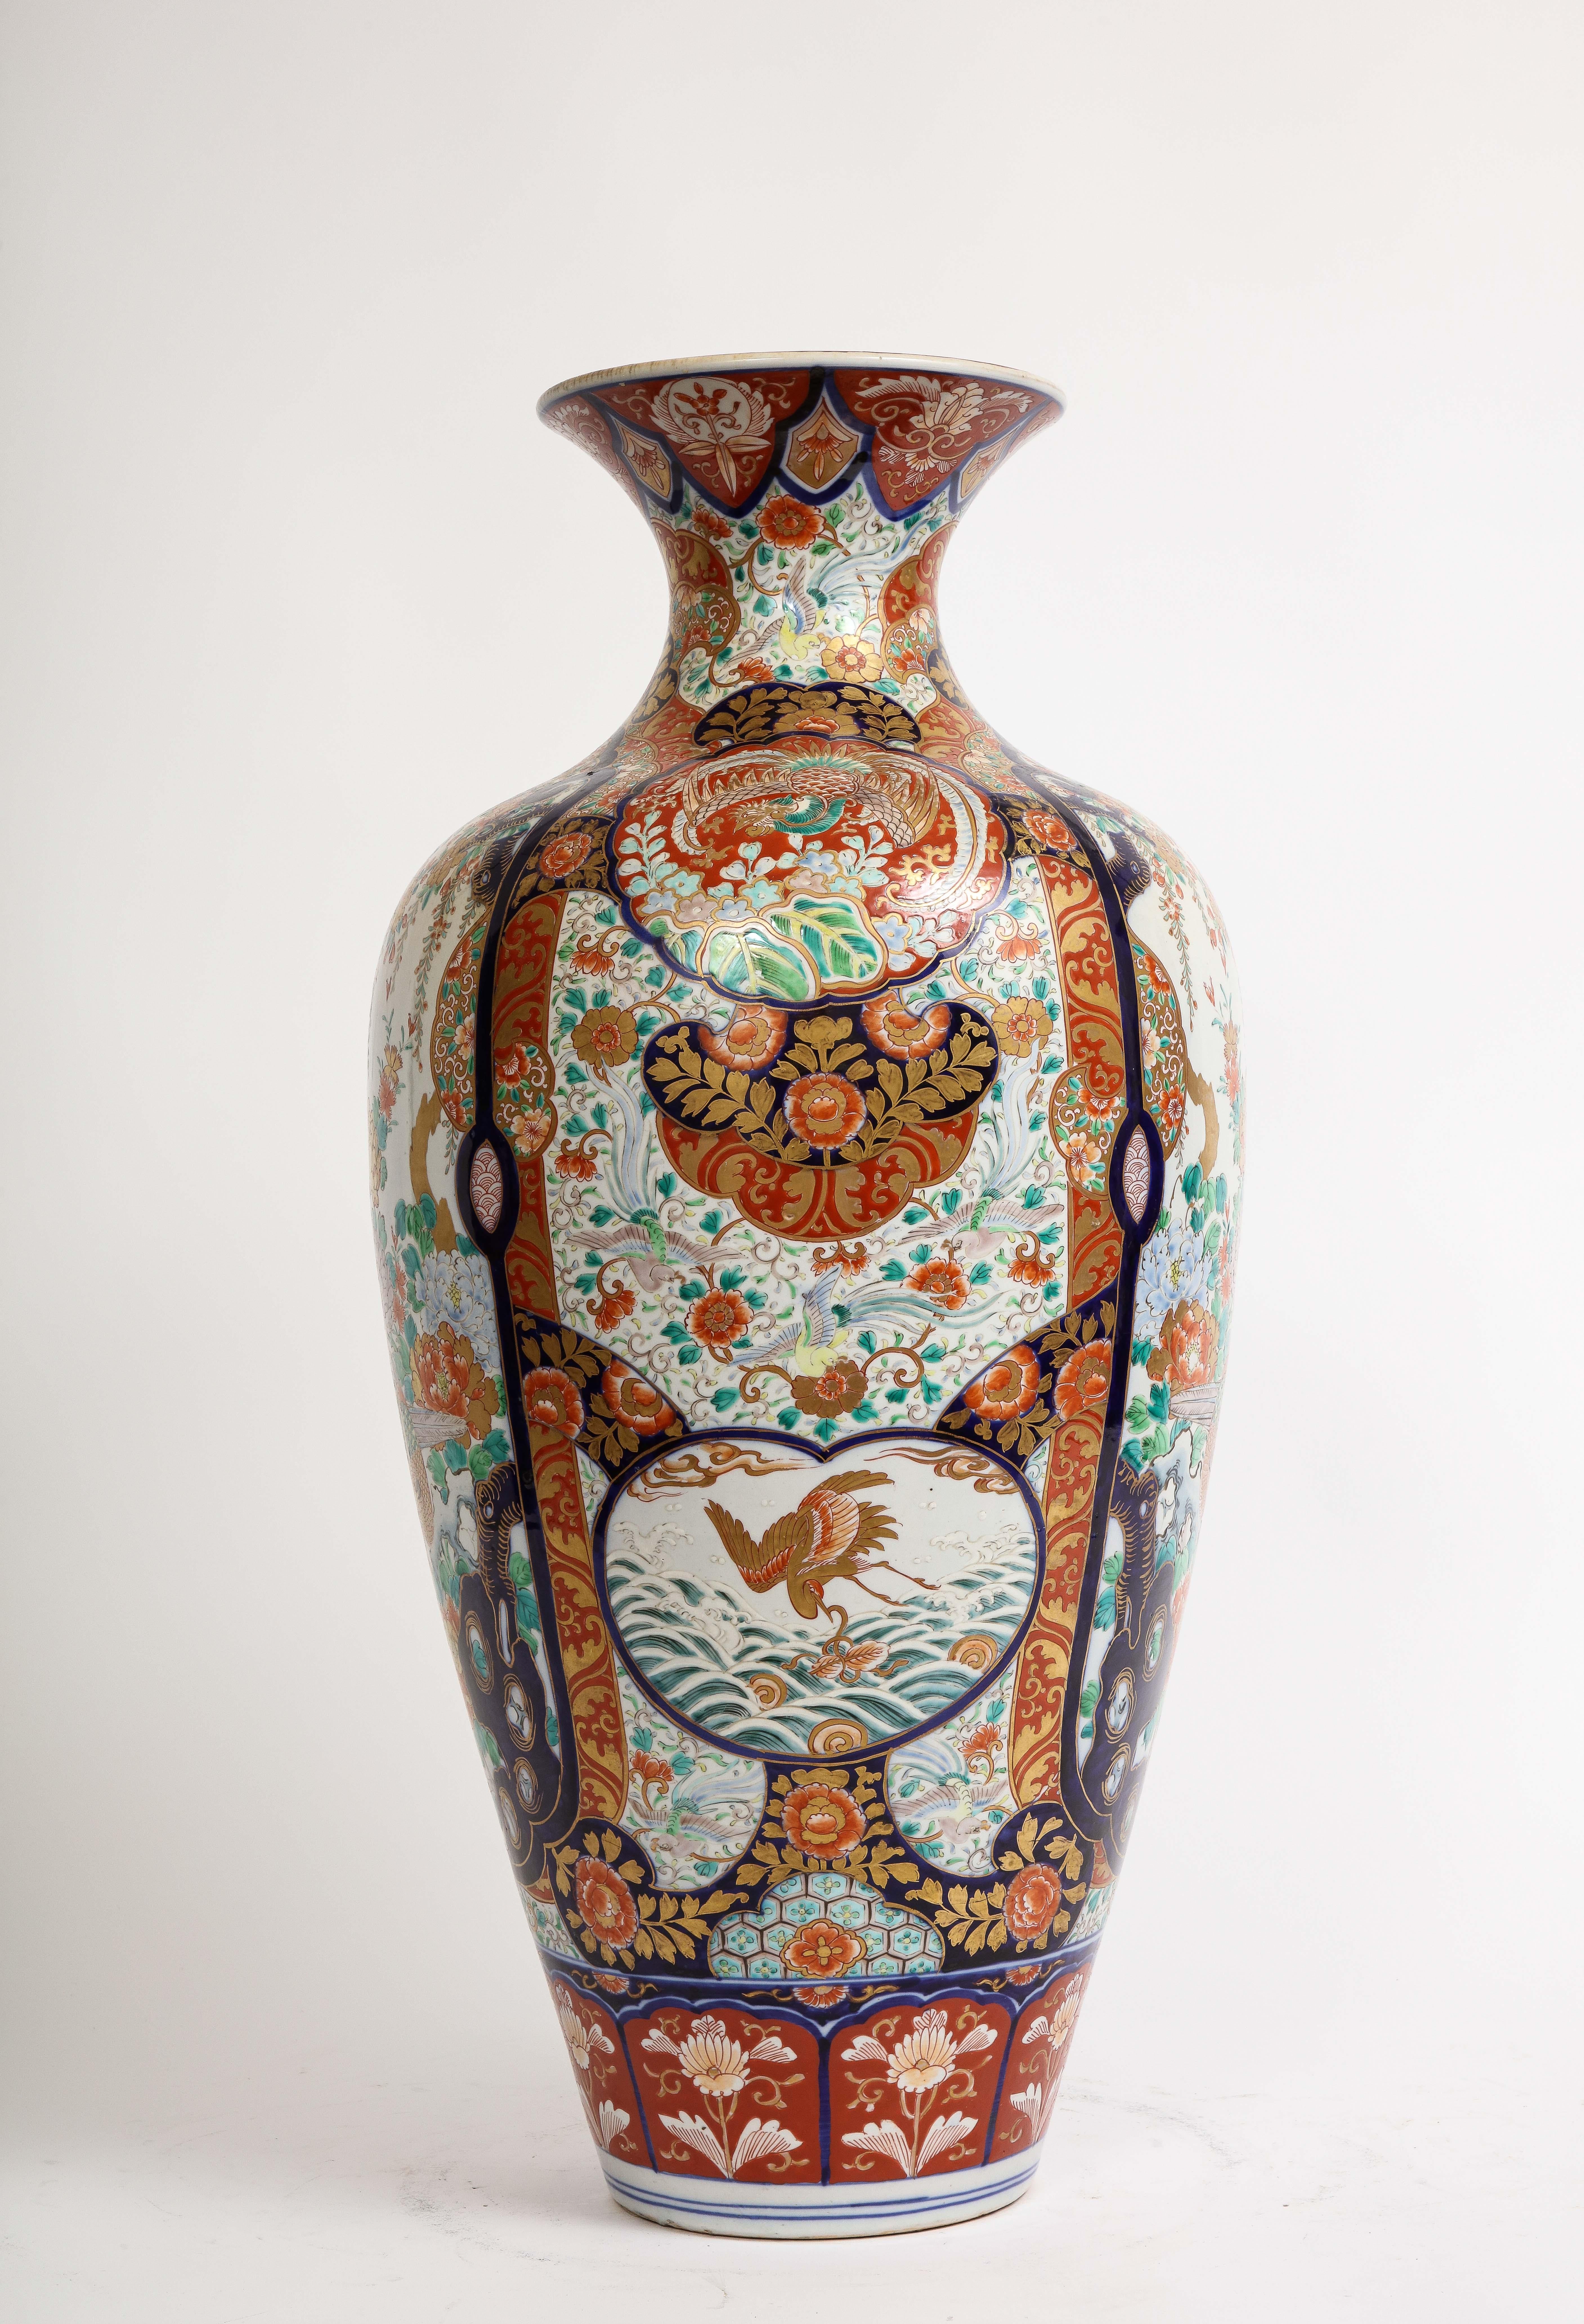 Große japanische Vase aus Imari-Porzellan, Meiji-Zeit, CIRCA 1880

Eine außergewöhnliche japanische Imari-Porzellanvase aus den 1880er Jahren hat eine beeindruckende Höhe von 29 Zoll.

Die Vorderseite dieses Meisterwerks zeigt eine fesselnde Szene